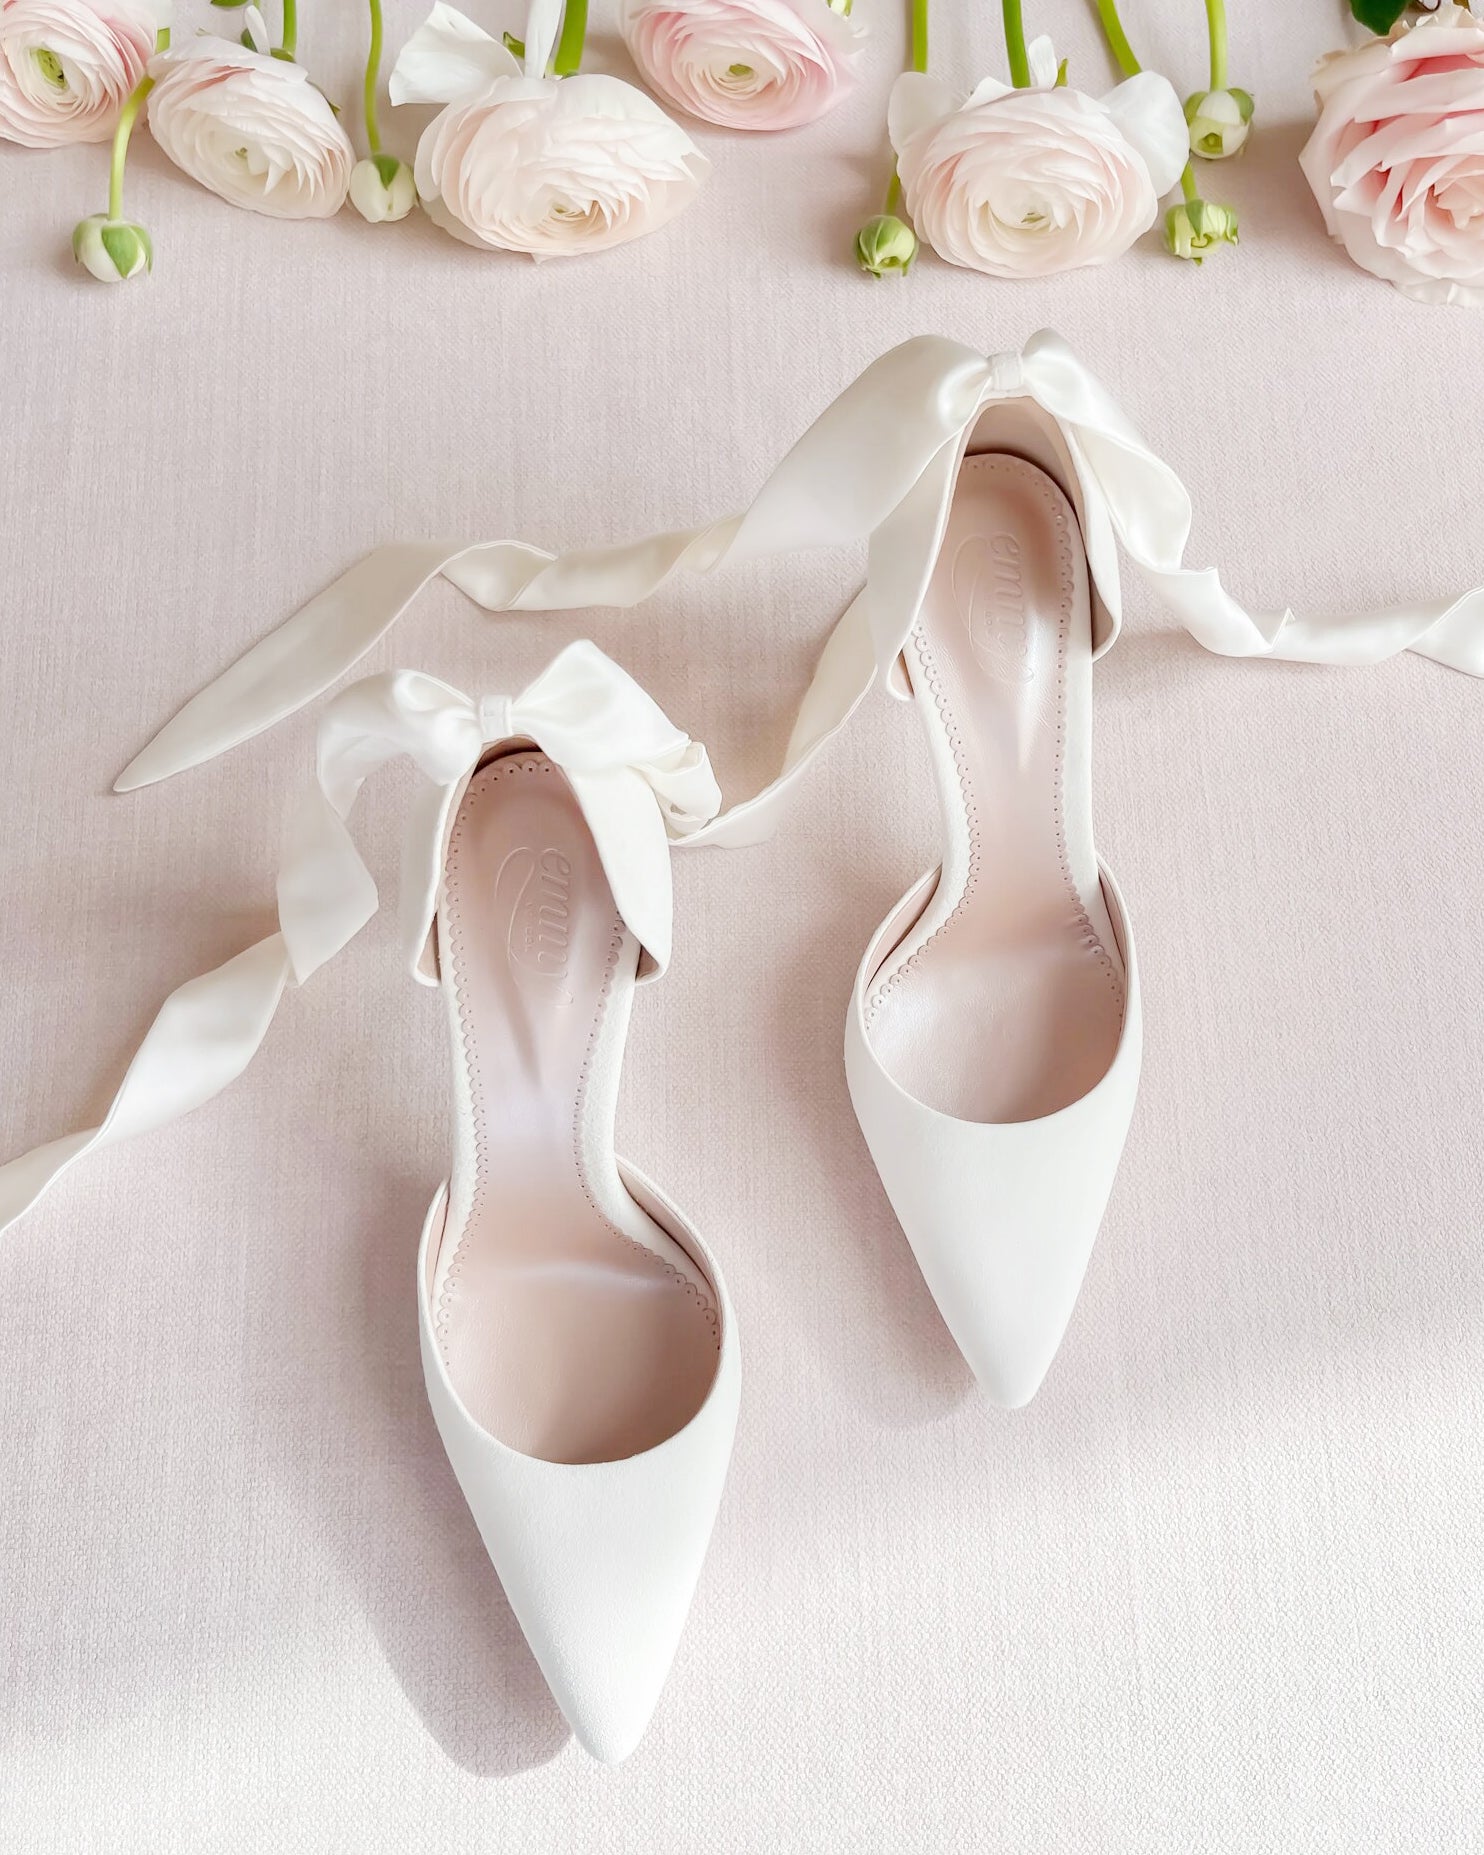 Bridal shoessplit-banner image